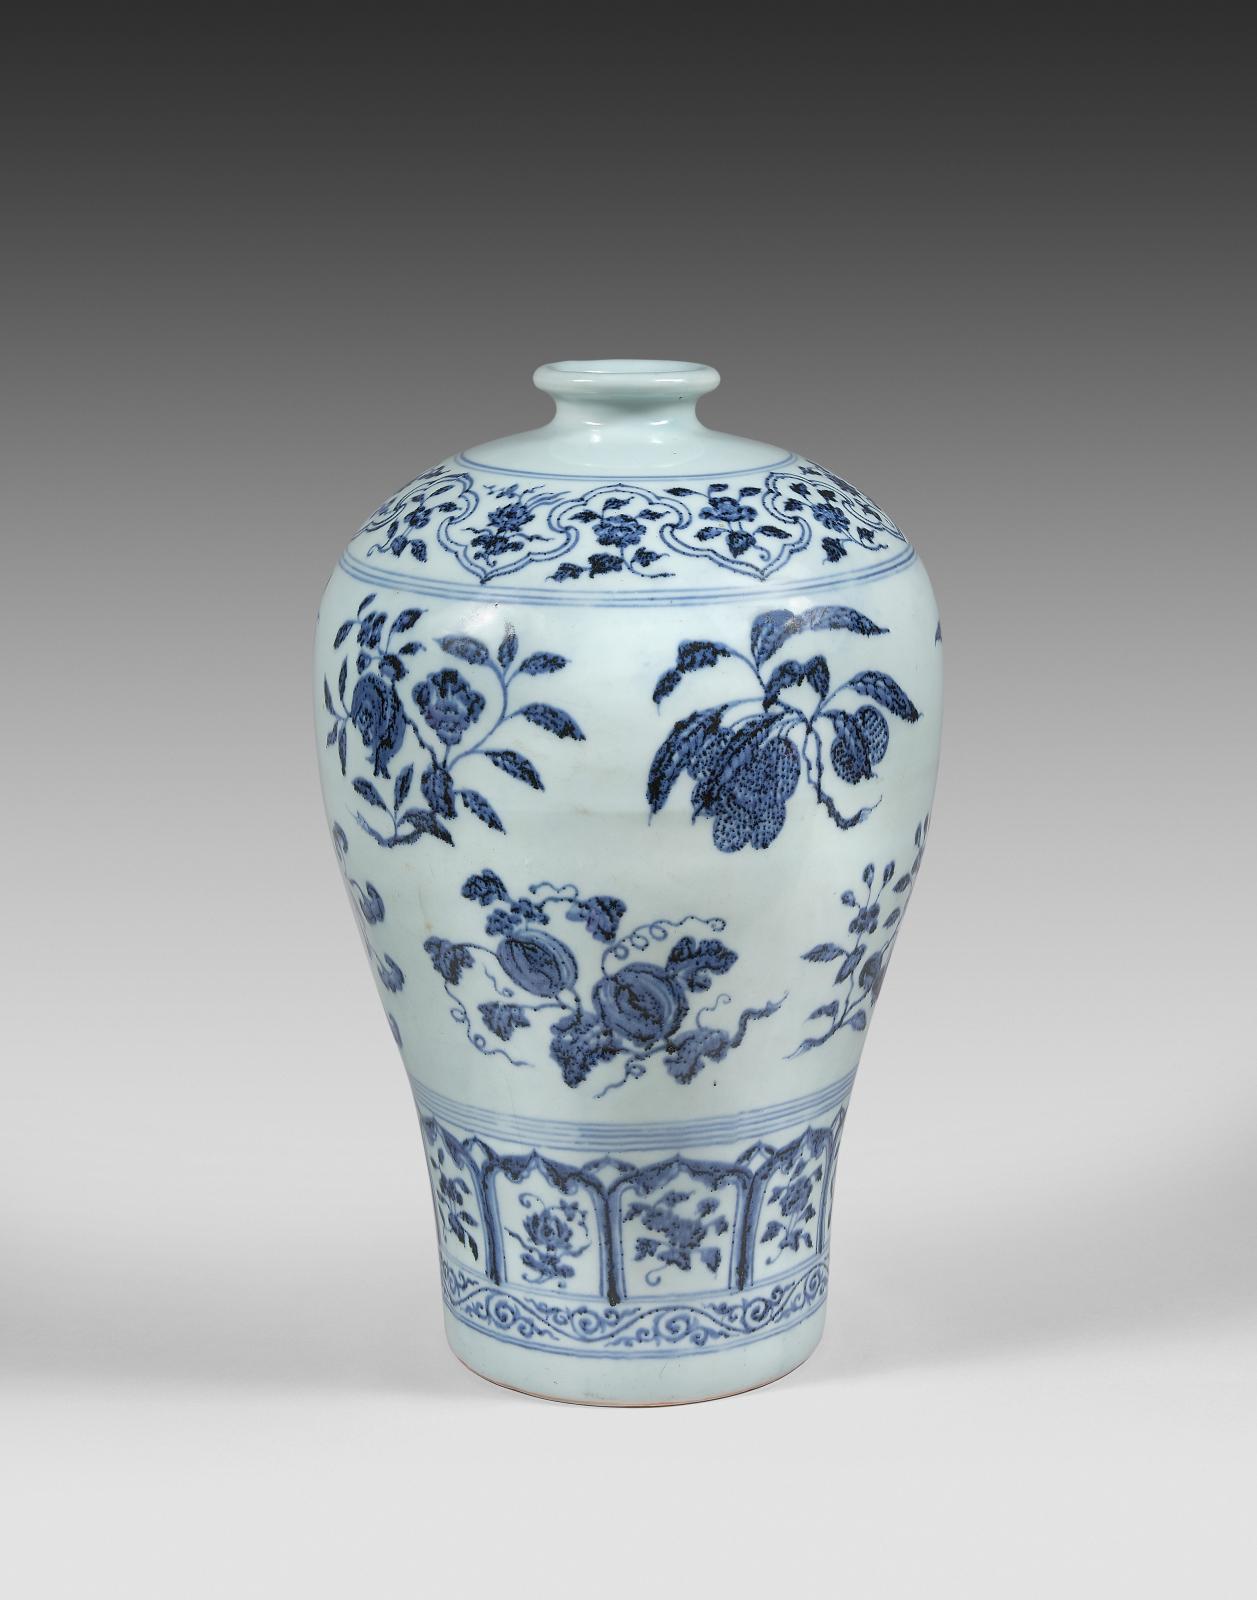 Les fastes « bleu et blanc » d’un vase Ming